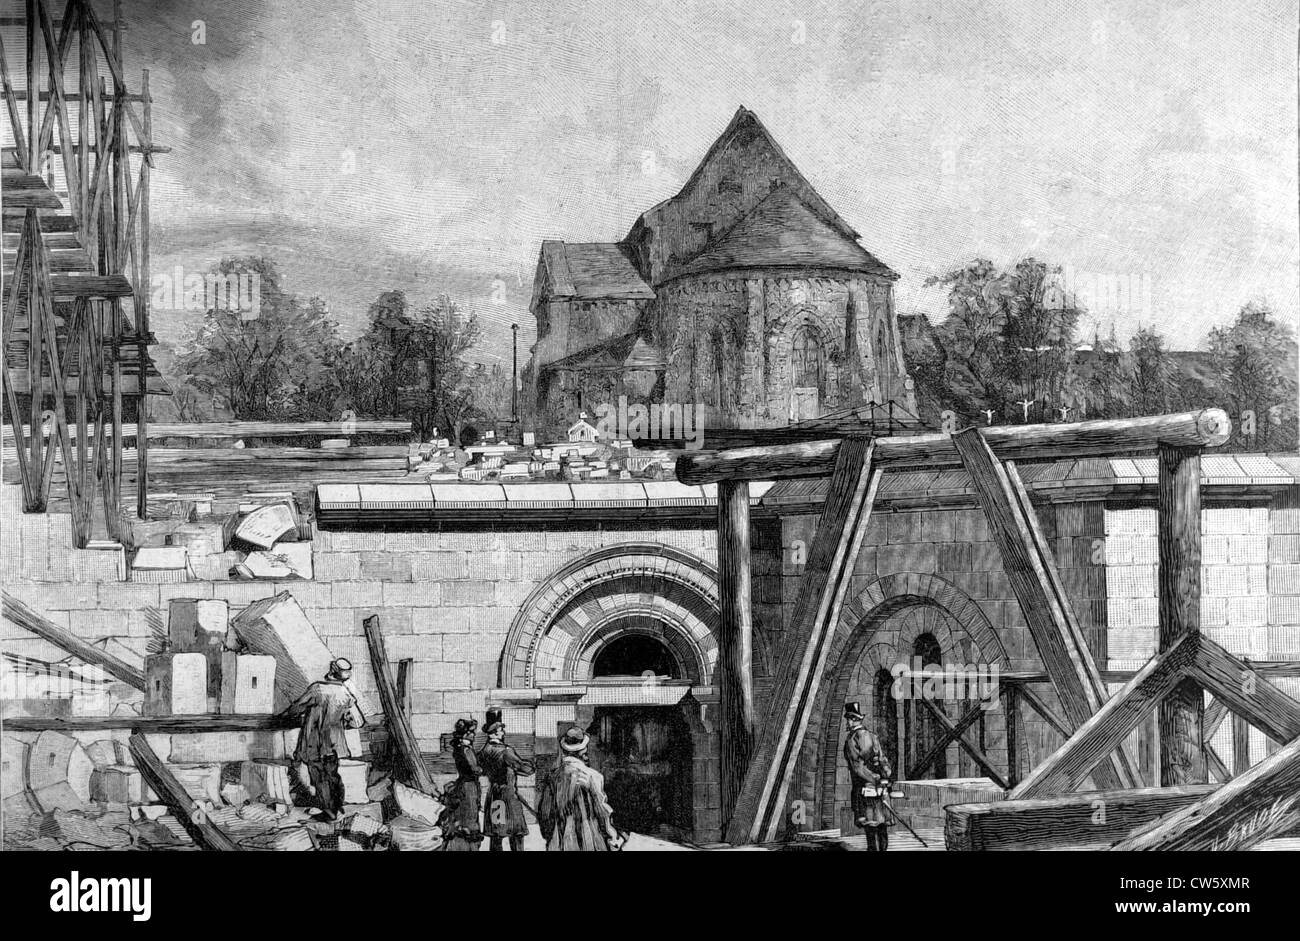 Les grands projets de construction de Paris. La construction souterraine de l'église du Sacré-Coeur, à Montmartre Banque D'Images